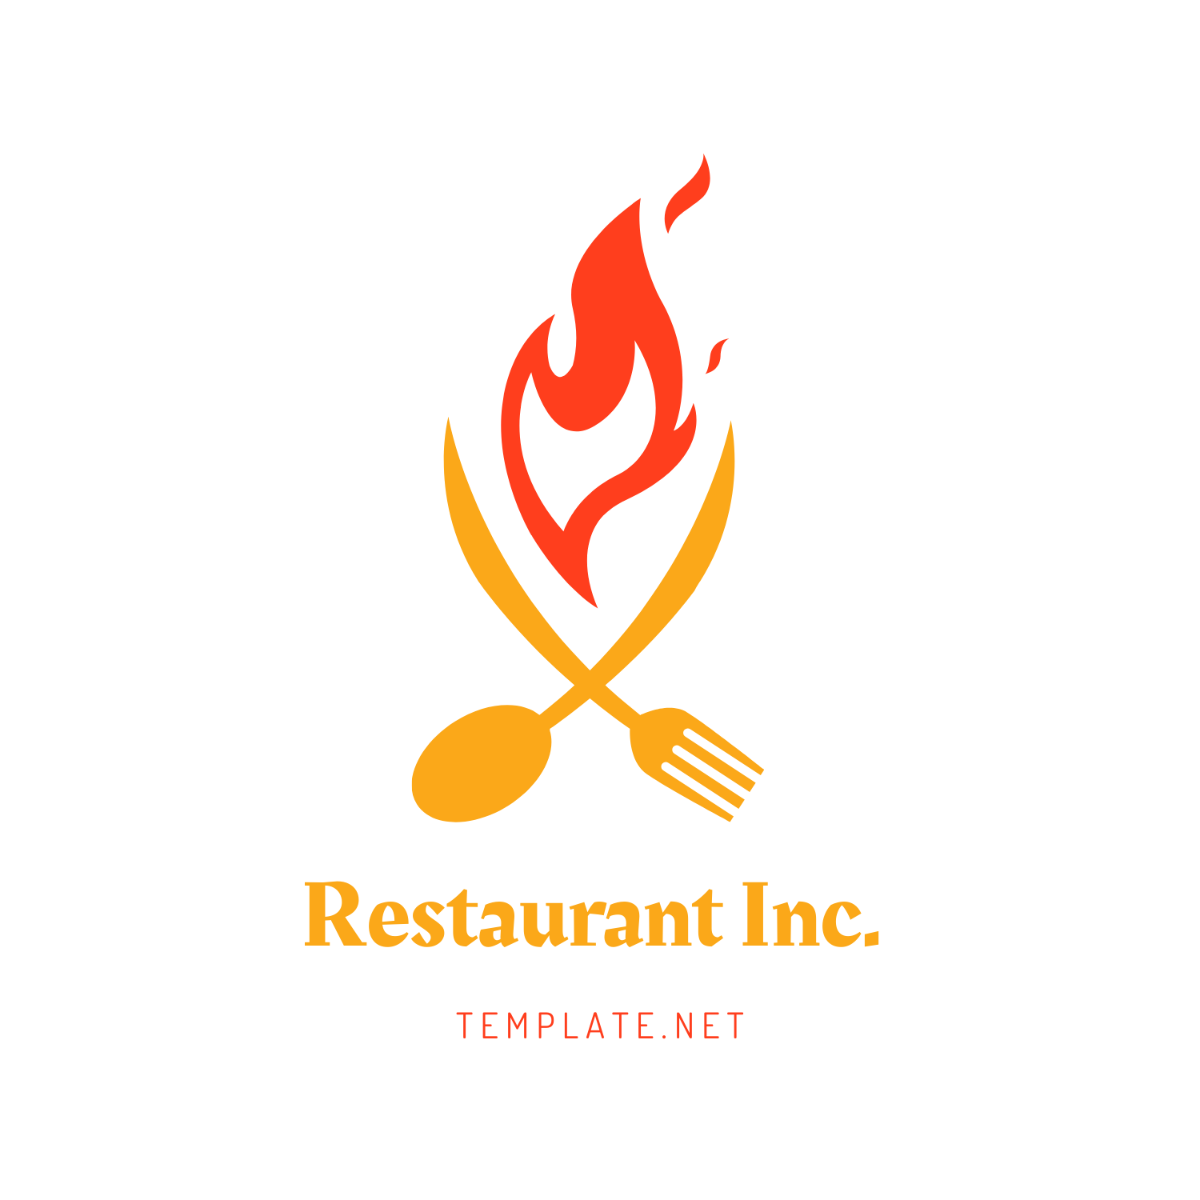 Restaurant Company Logo